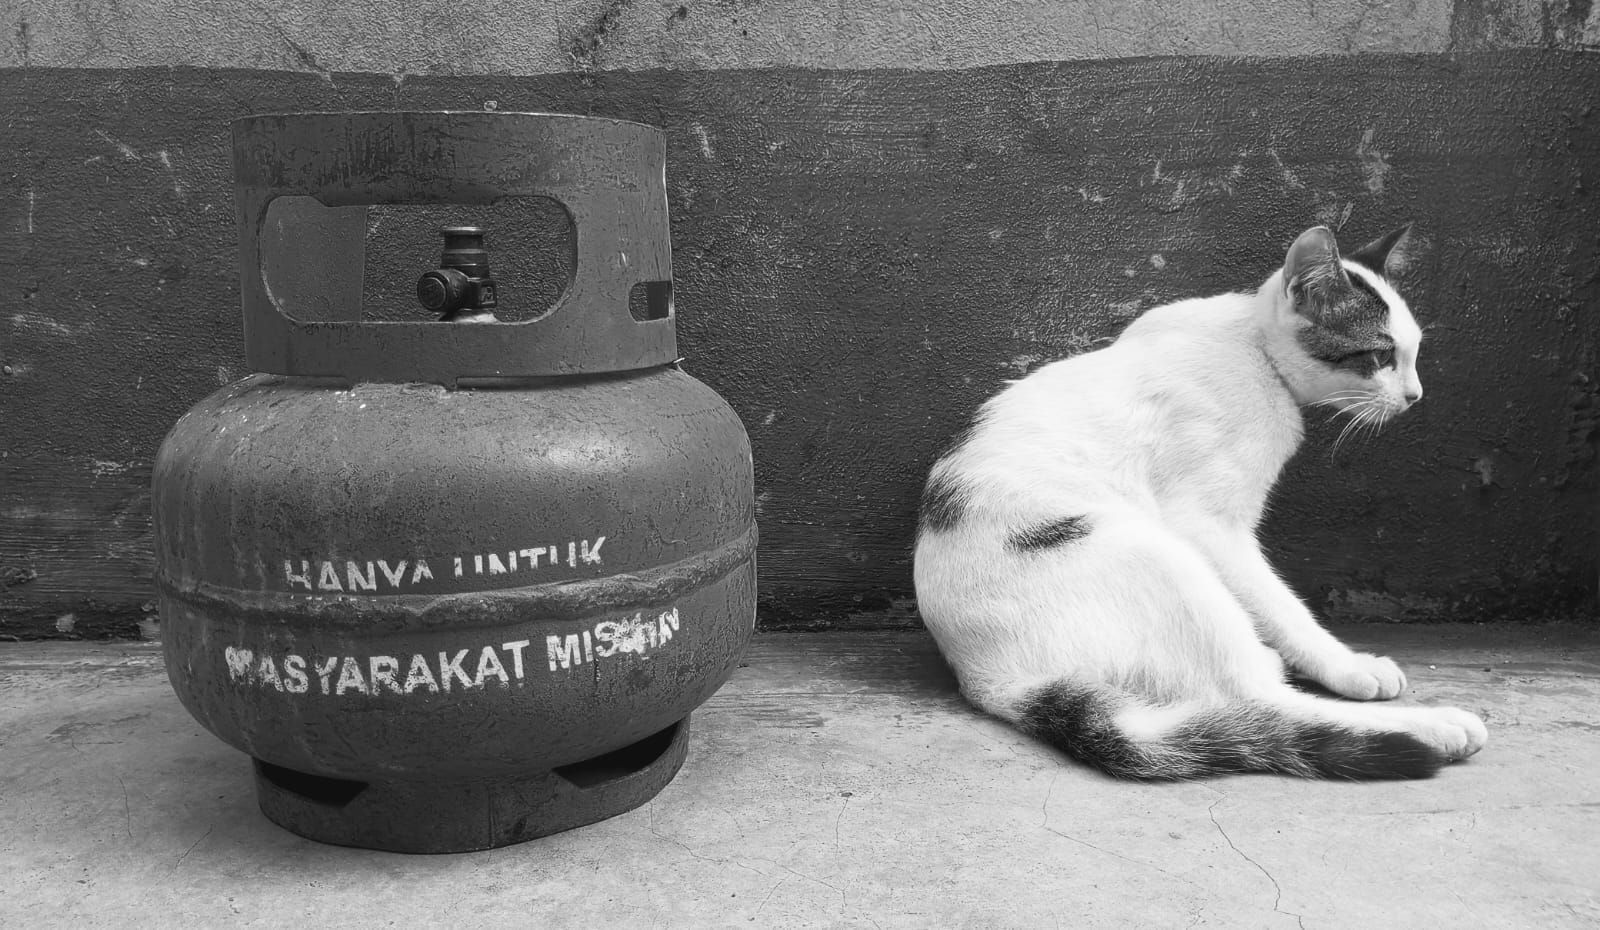 Tabung gas bersubsidi LPG 3 kg dan seekor kucing. Perpres nomor 104 tahun 2017 tentang penyediaan, pendistribusian, dan penetapan harga liquified petroleum gas (LPG) tabung tiga kilogram, peraturan yang mengatur pembaliannya.